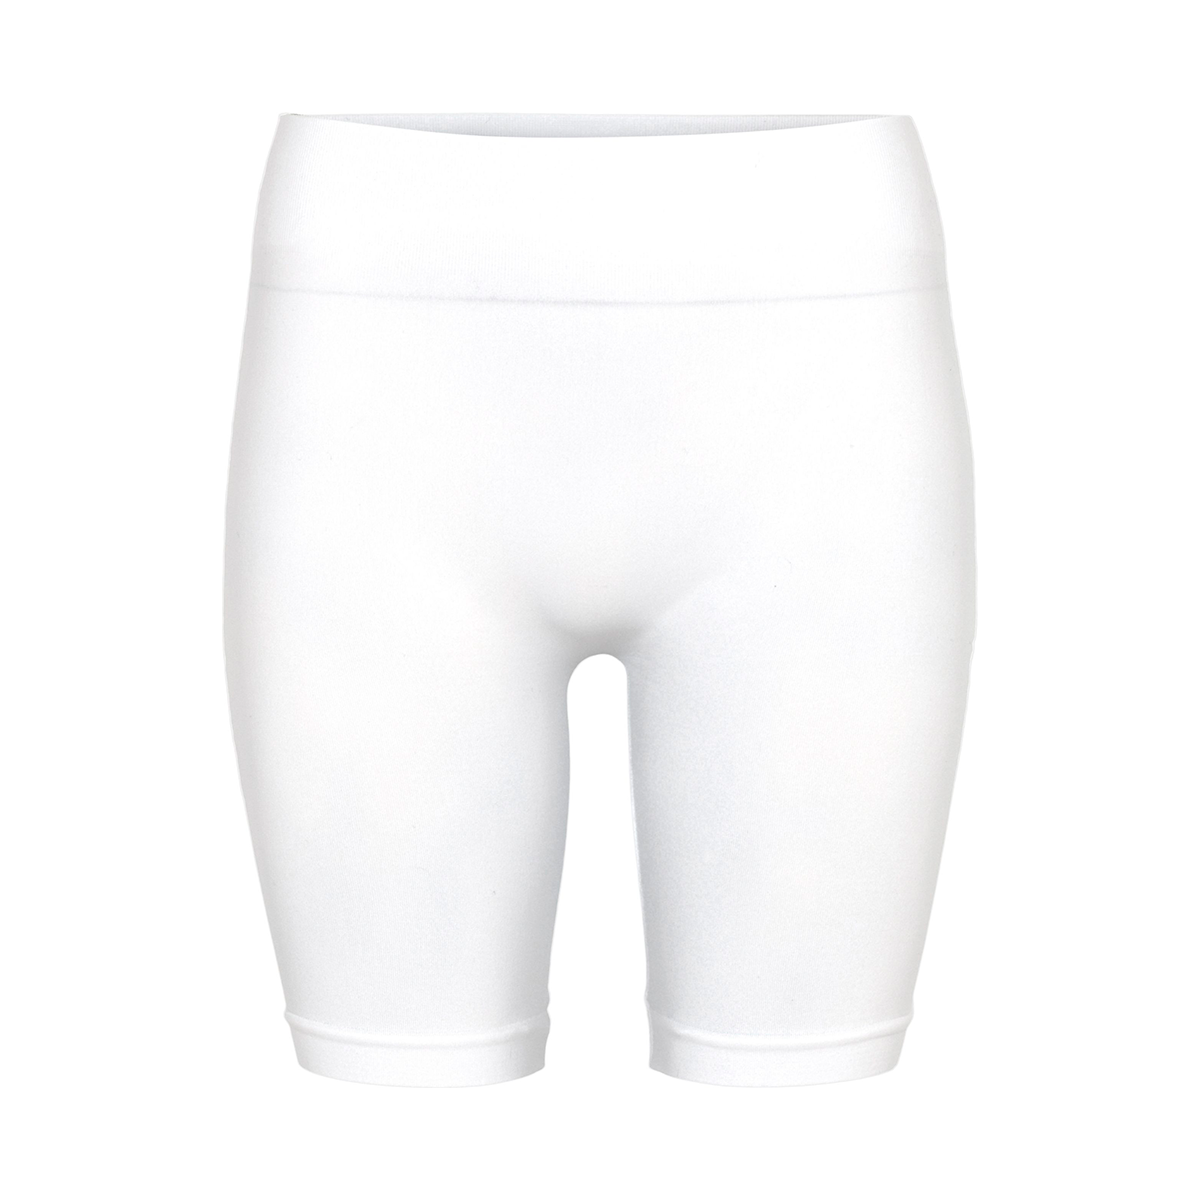 #2 - Decoy Seamless Shorts, Farve: Hvid, Størrelse: S/M, Dame